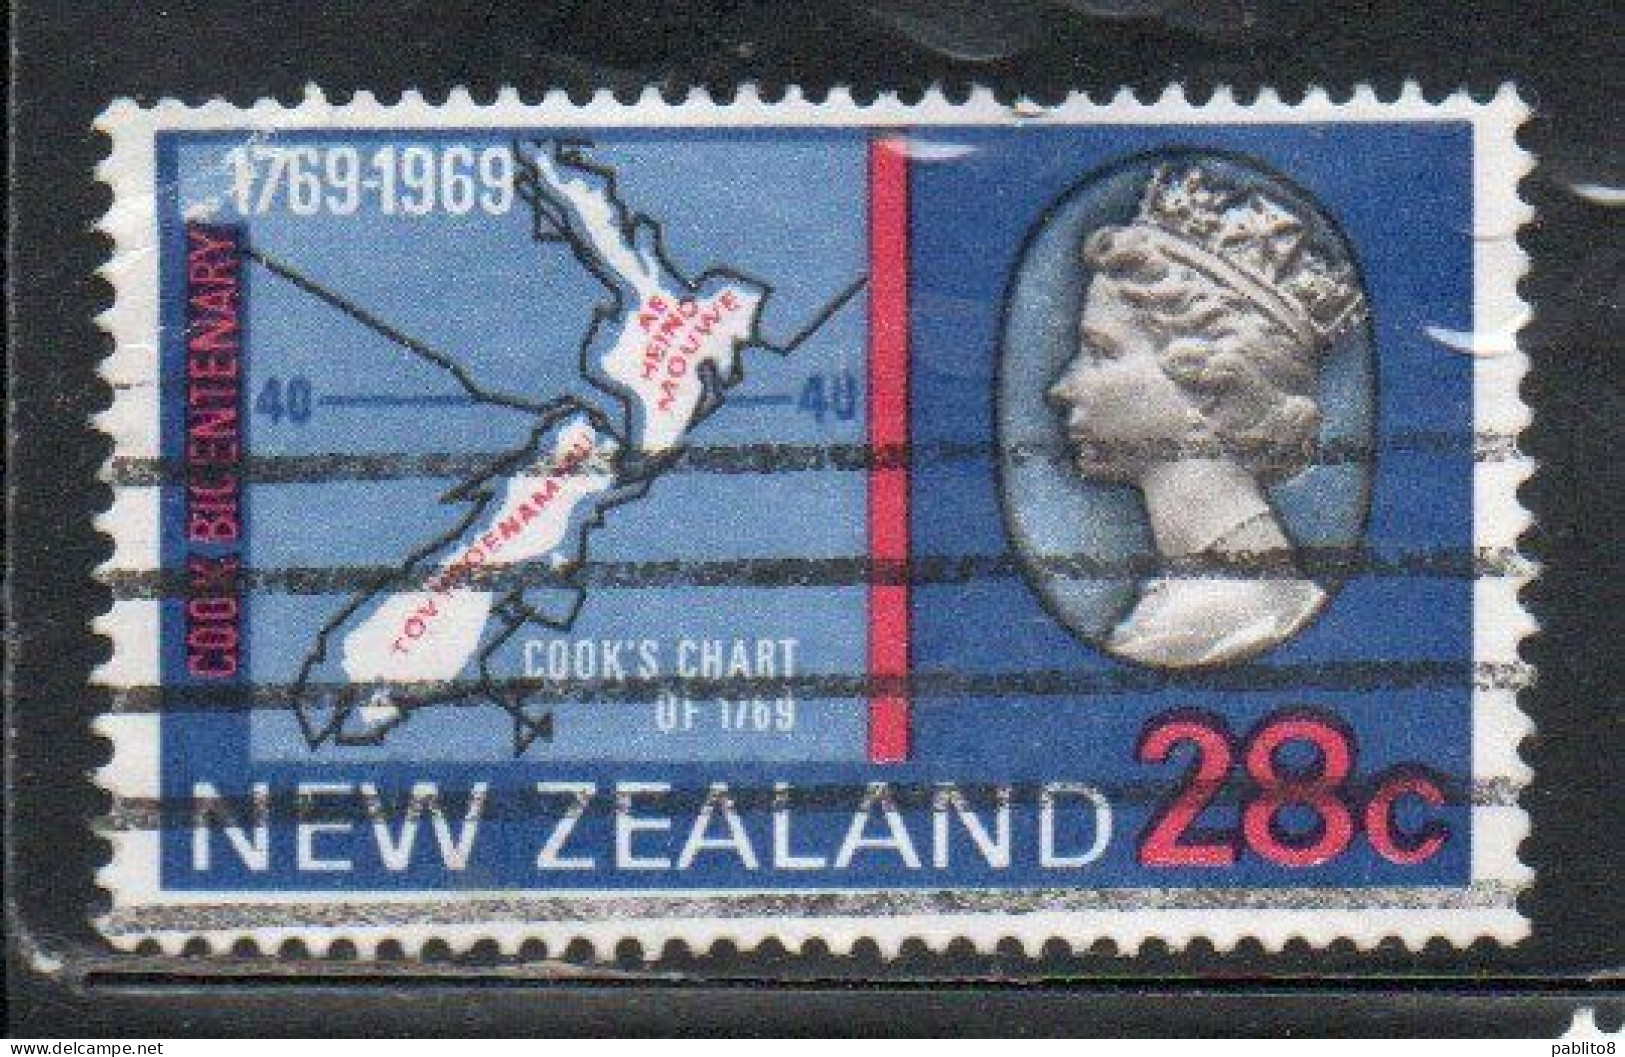 NEW ZEALAND NUOVA ZELANDA 1969 CAPTAIN COOK LANDING CHART QUEEN ELIZABETH II MAP 28c USED USATO OBLITERE' - Used Stamps